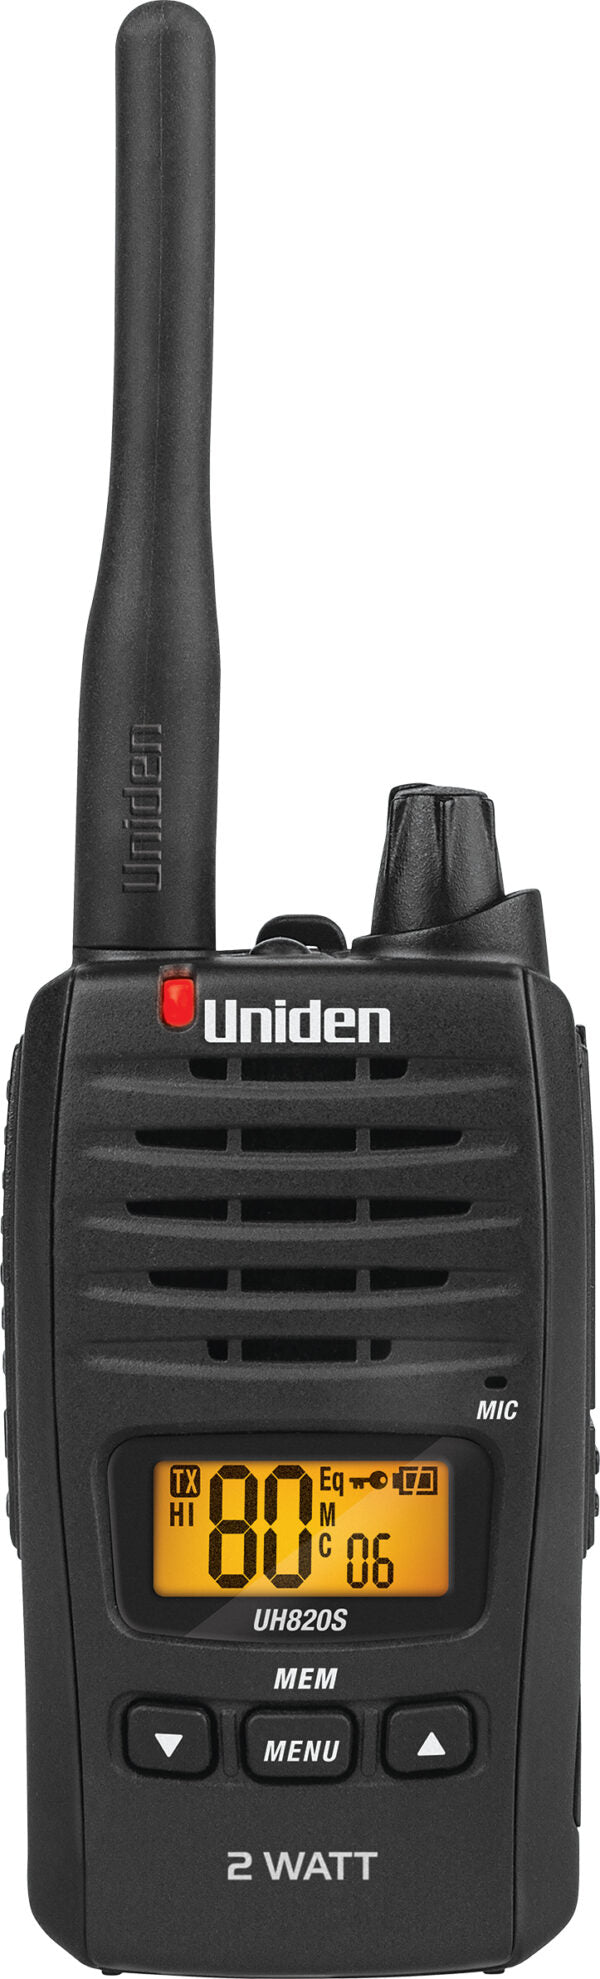 UH820S-2 80 Channels 2 Watt UHF Handheld Radio